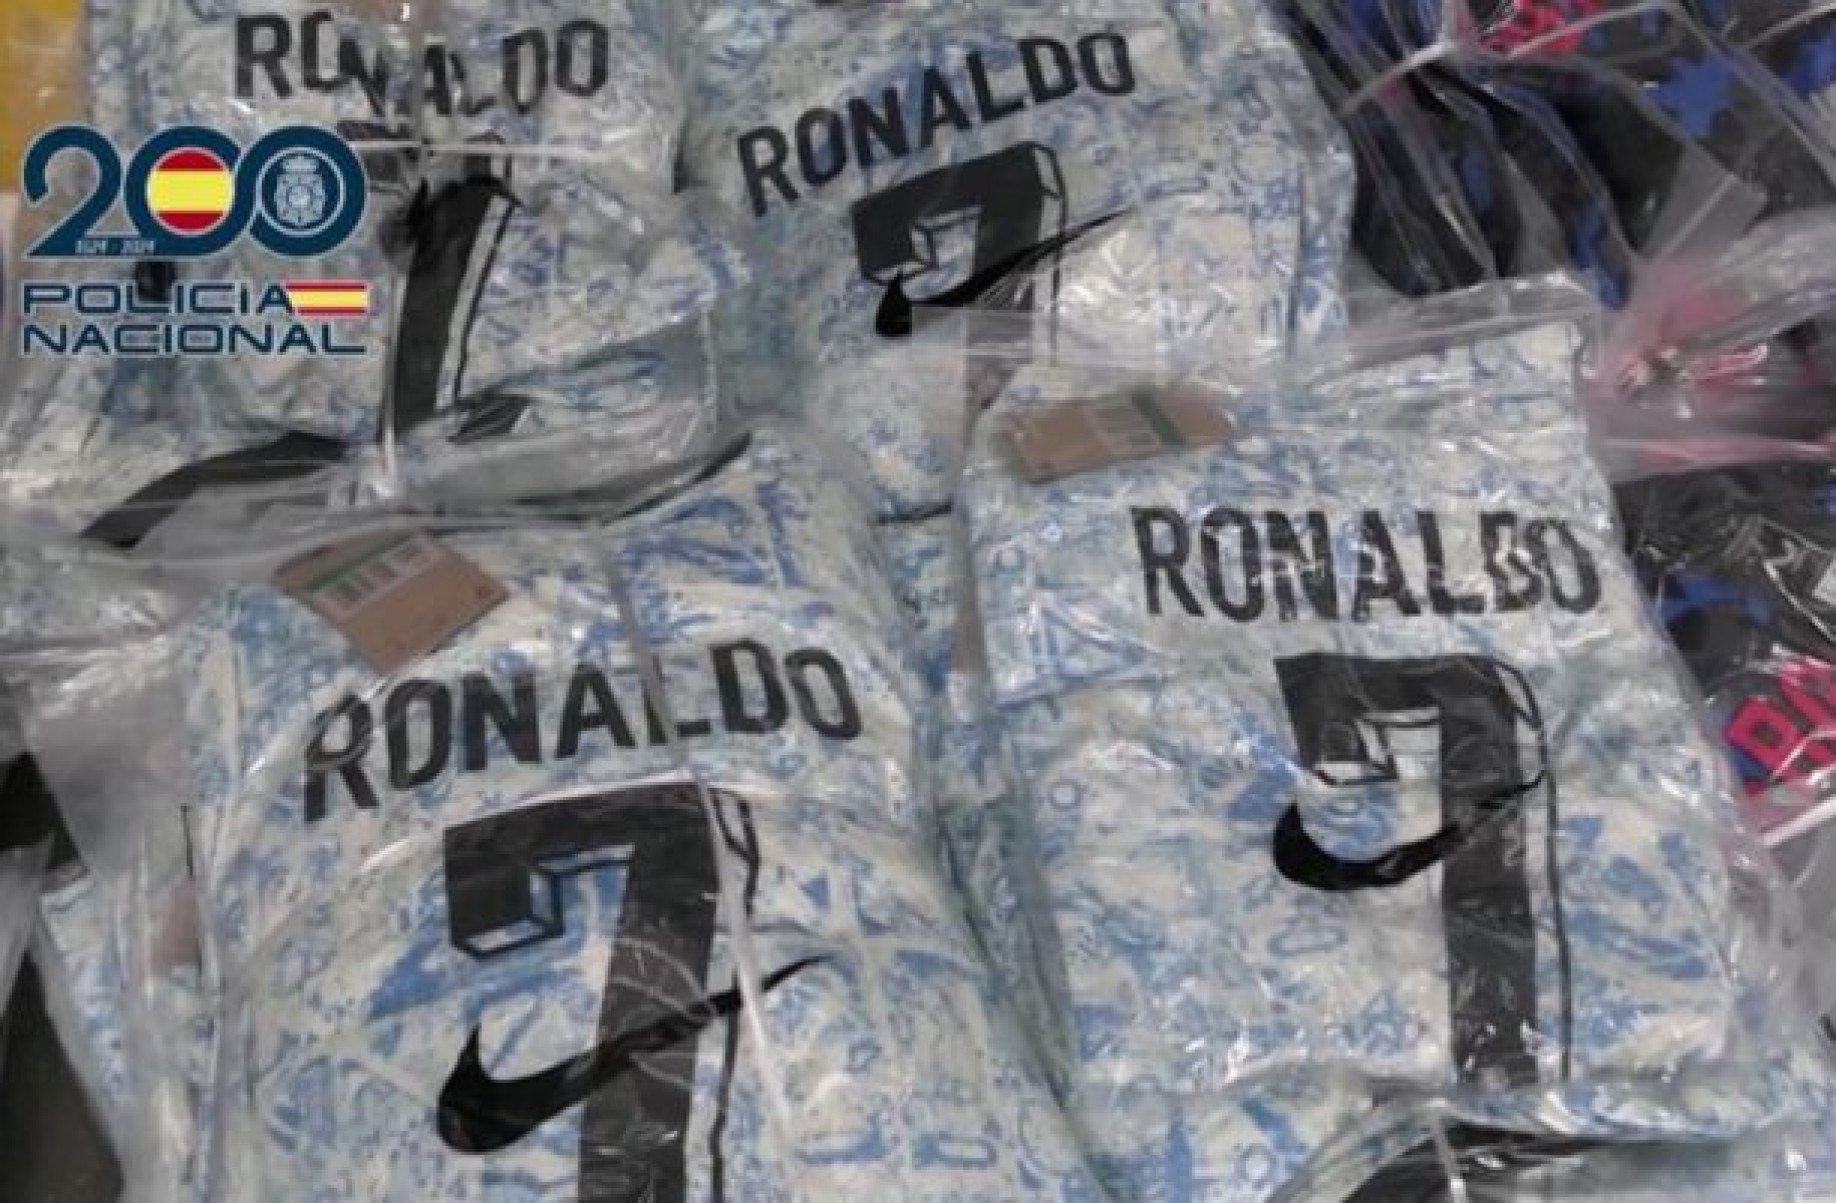 Polícia apreende 11 toneladas de camisas de futebol falsificadas